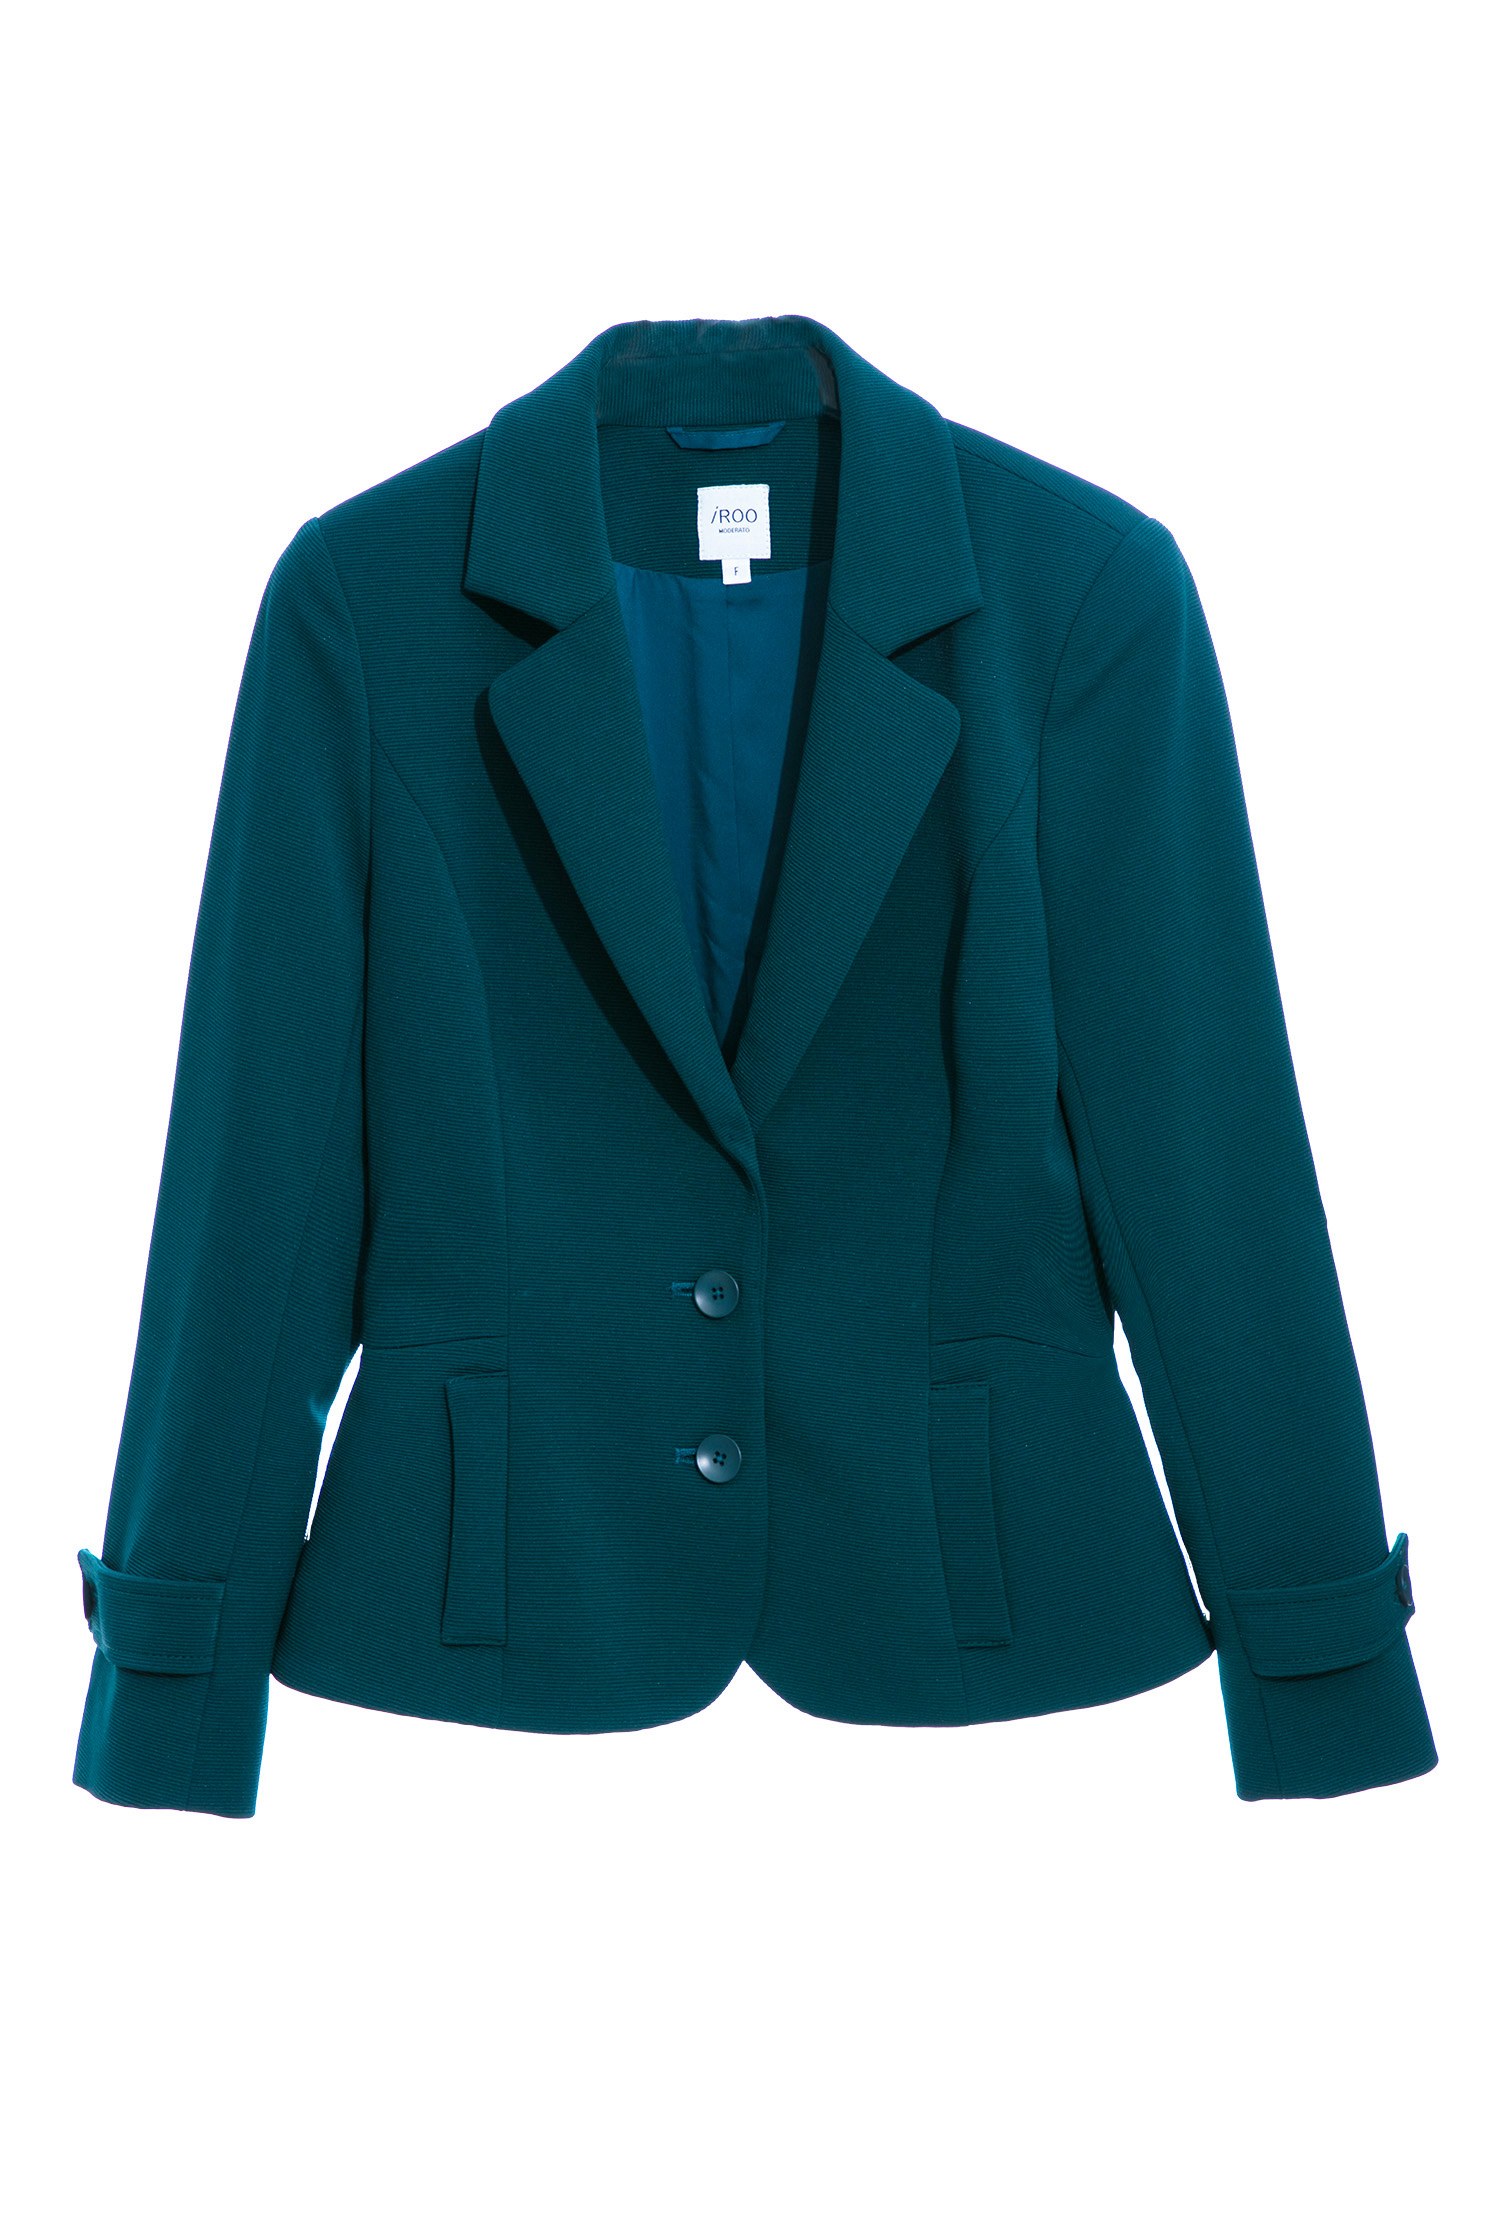 銅綠色切腰身外套,綠色 外套,翻領 外套,長袖 外套銅綠色切腰身外套,人氣商品,保暖特輯,外套,春夏穿搭,條紋,熱銷排行,西裝外套